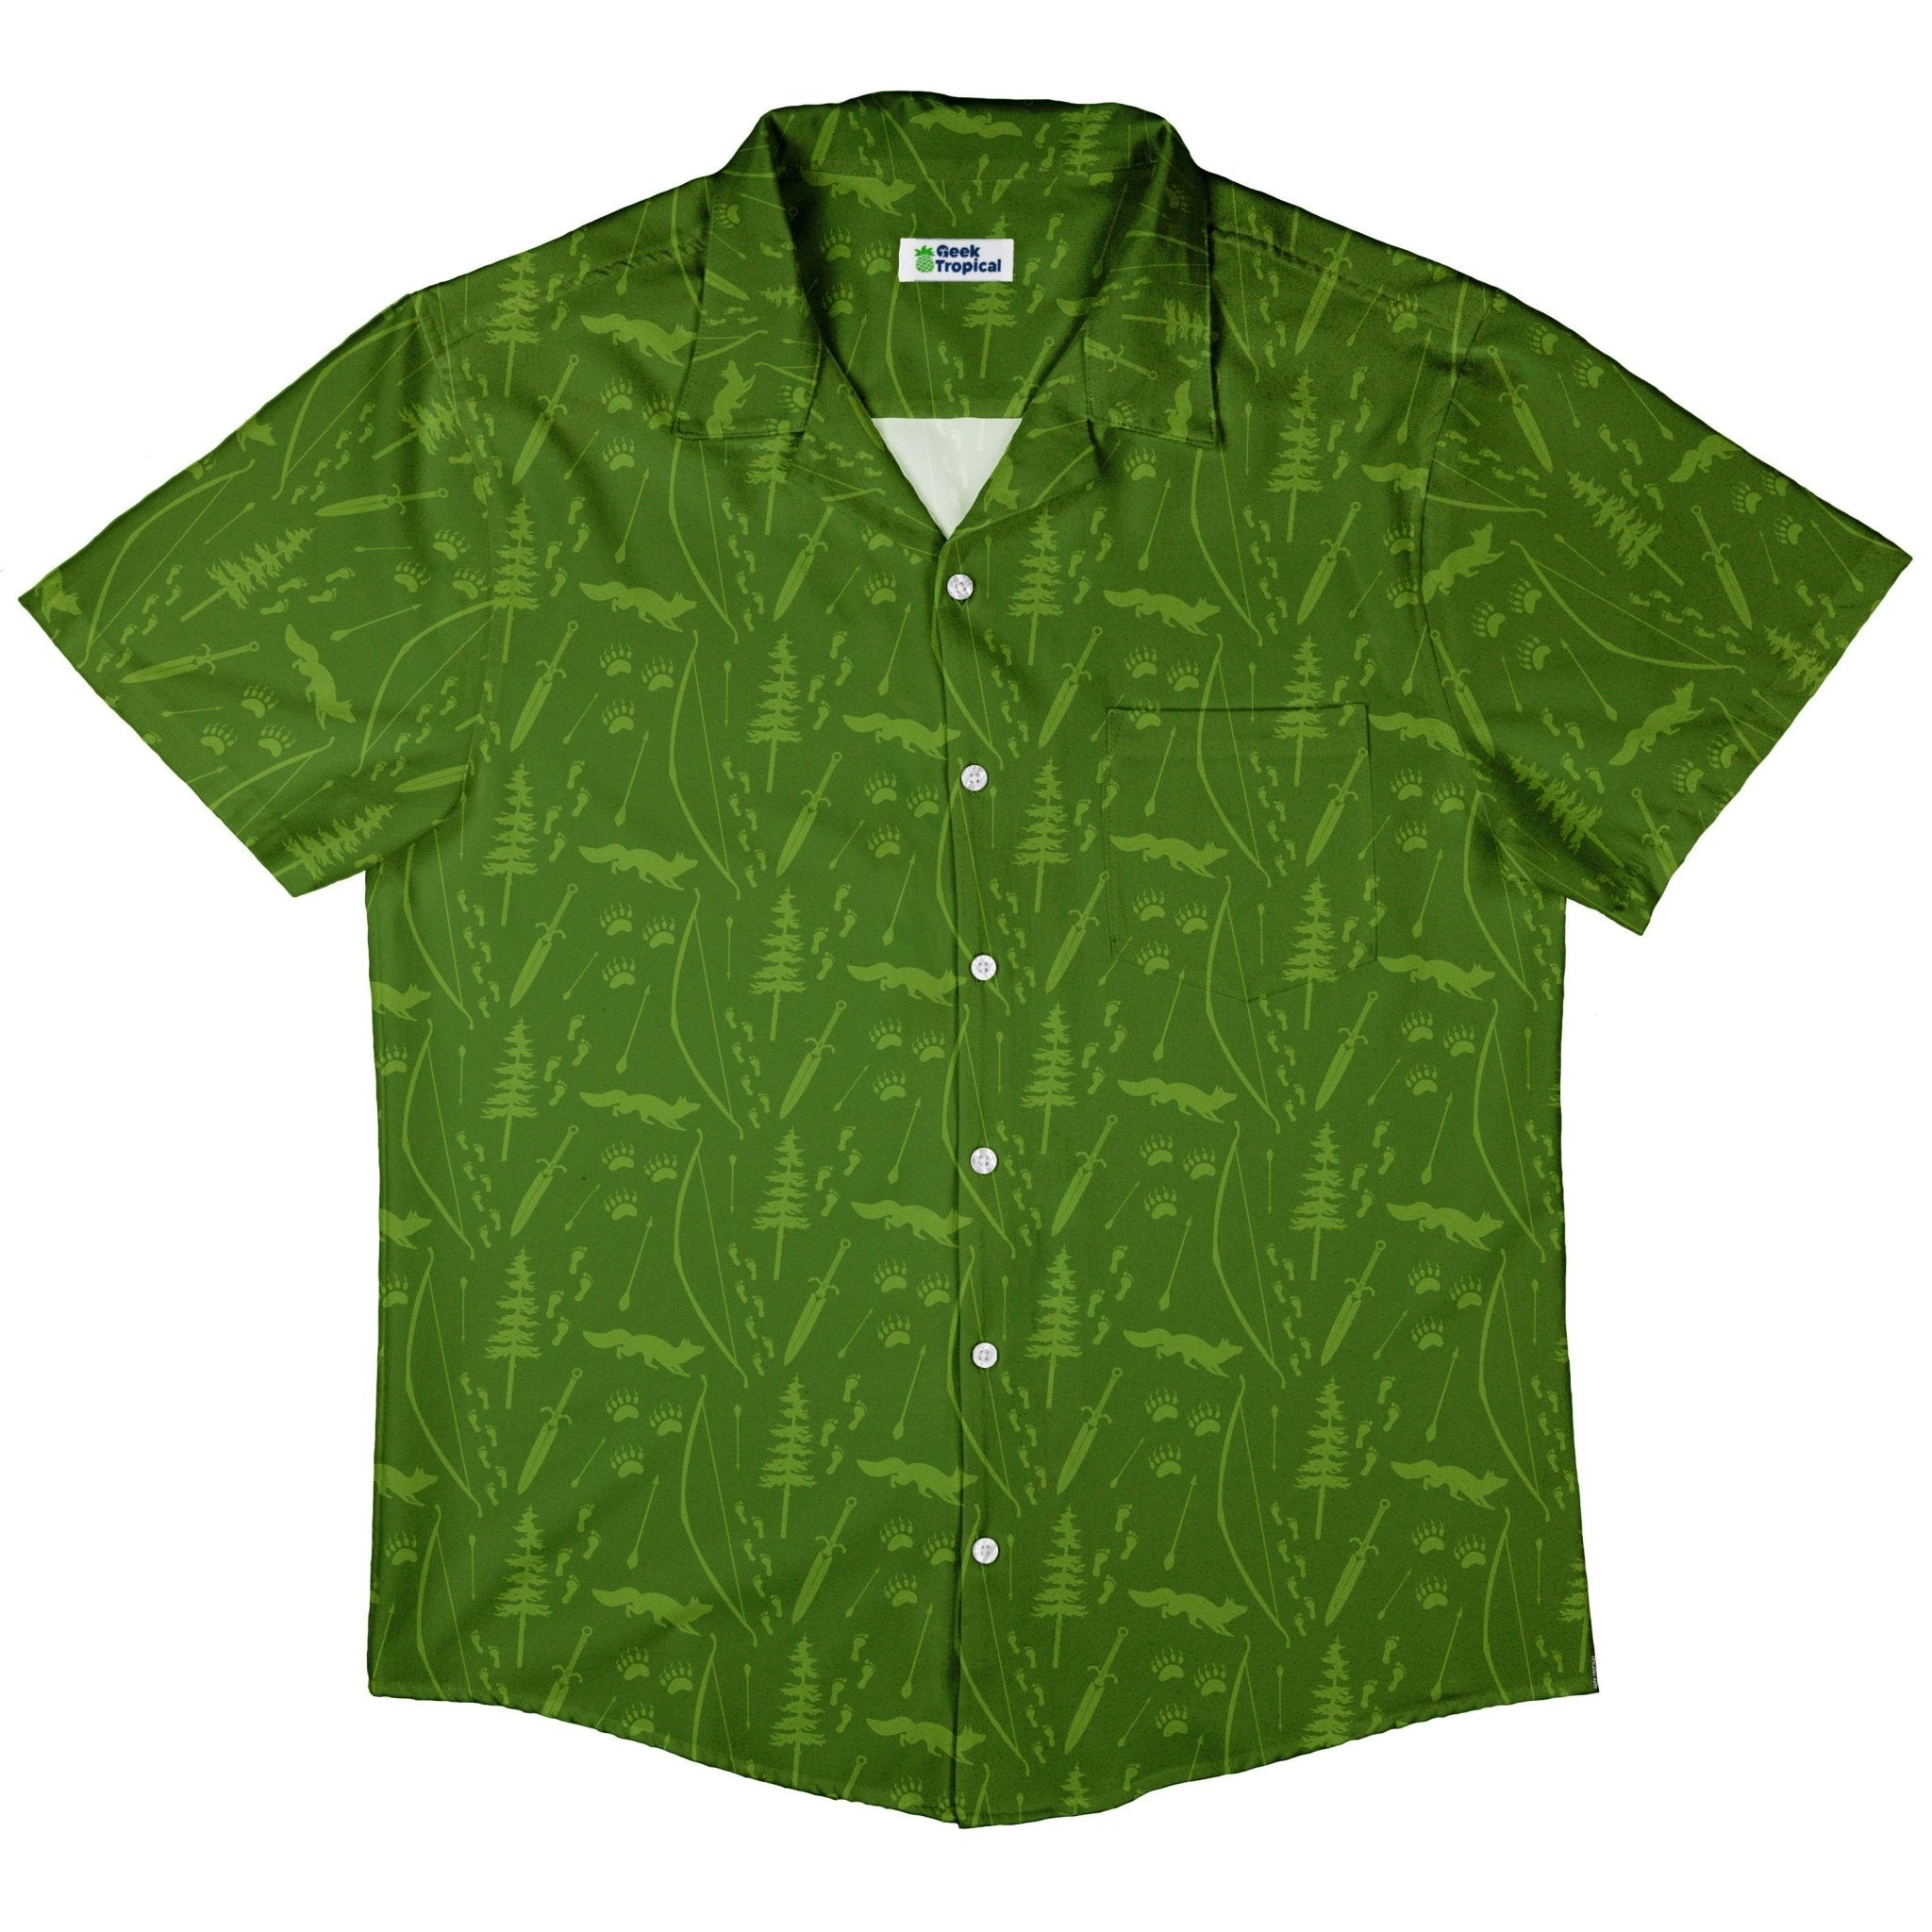 Dnd Ranger Class Button Up Shirt - adult sizing - Design by Heather Davenport - dnd & rpg print